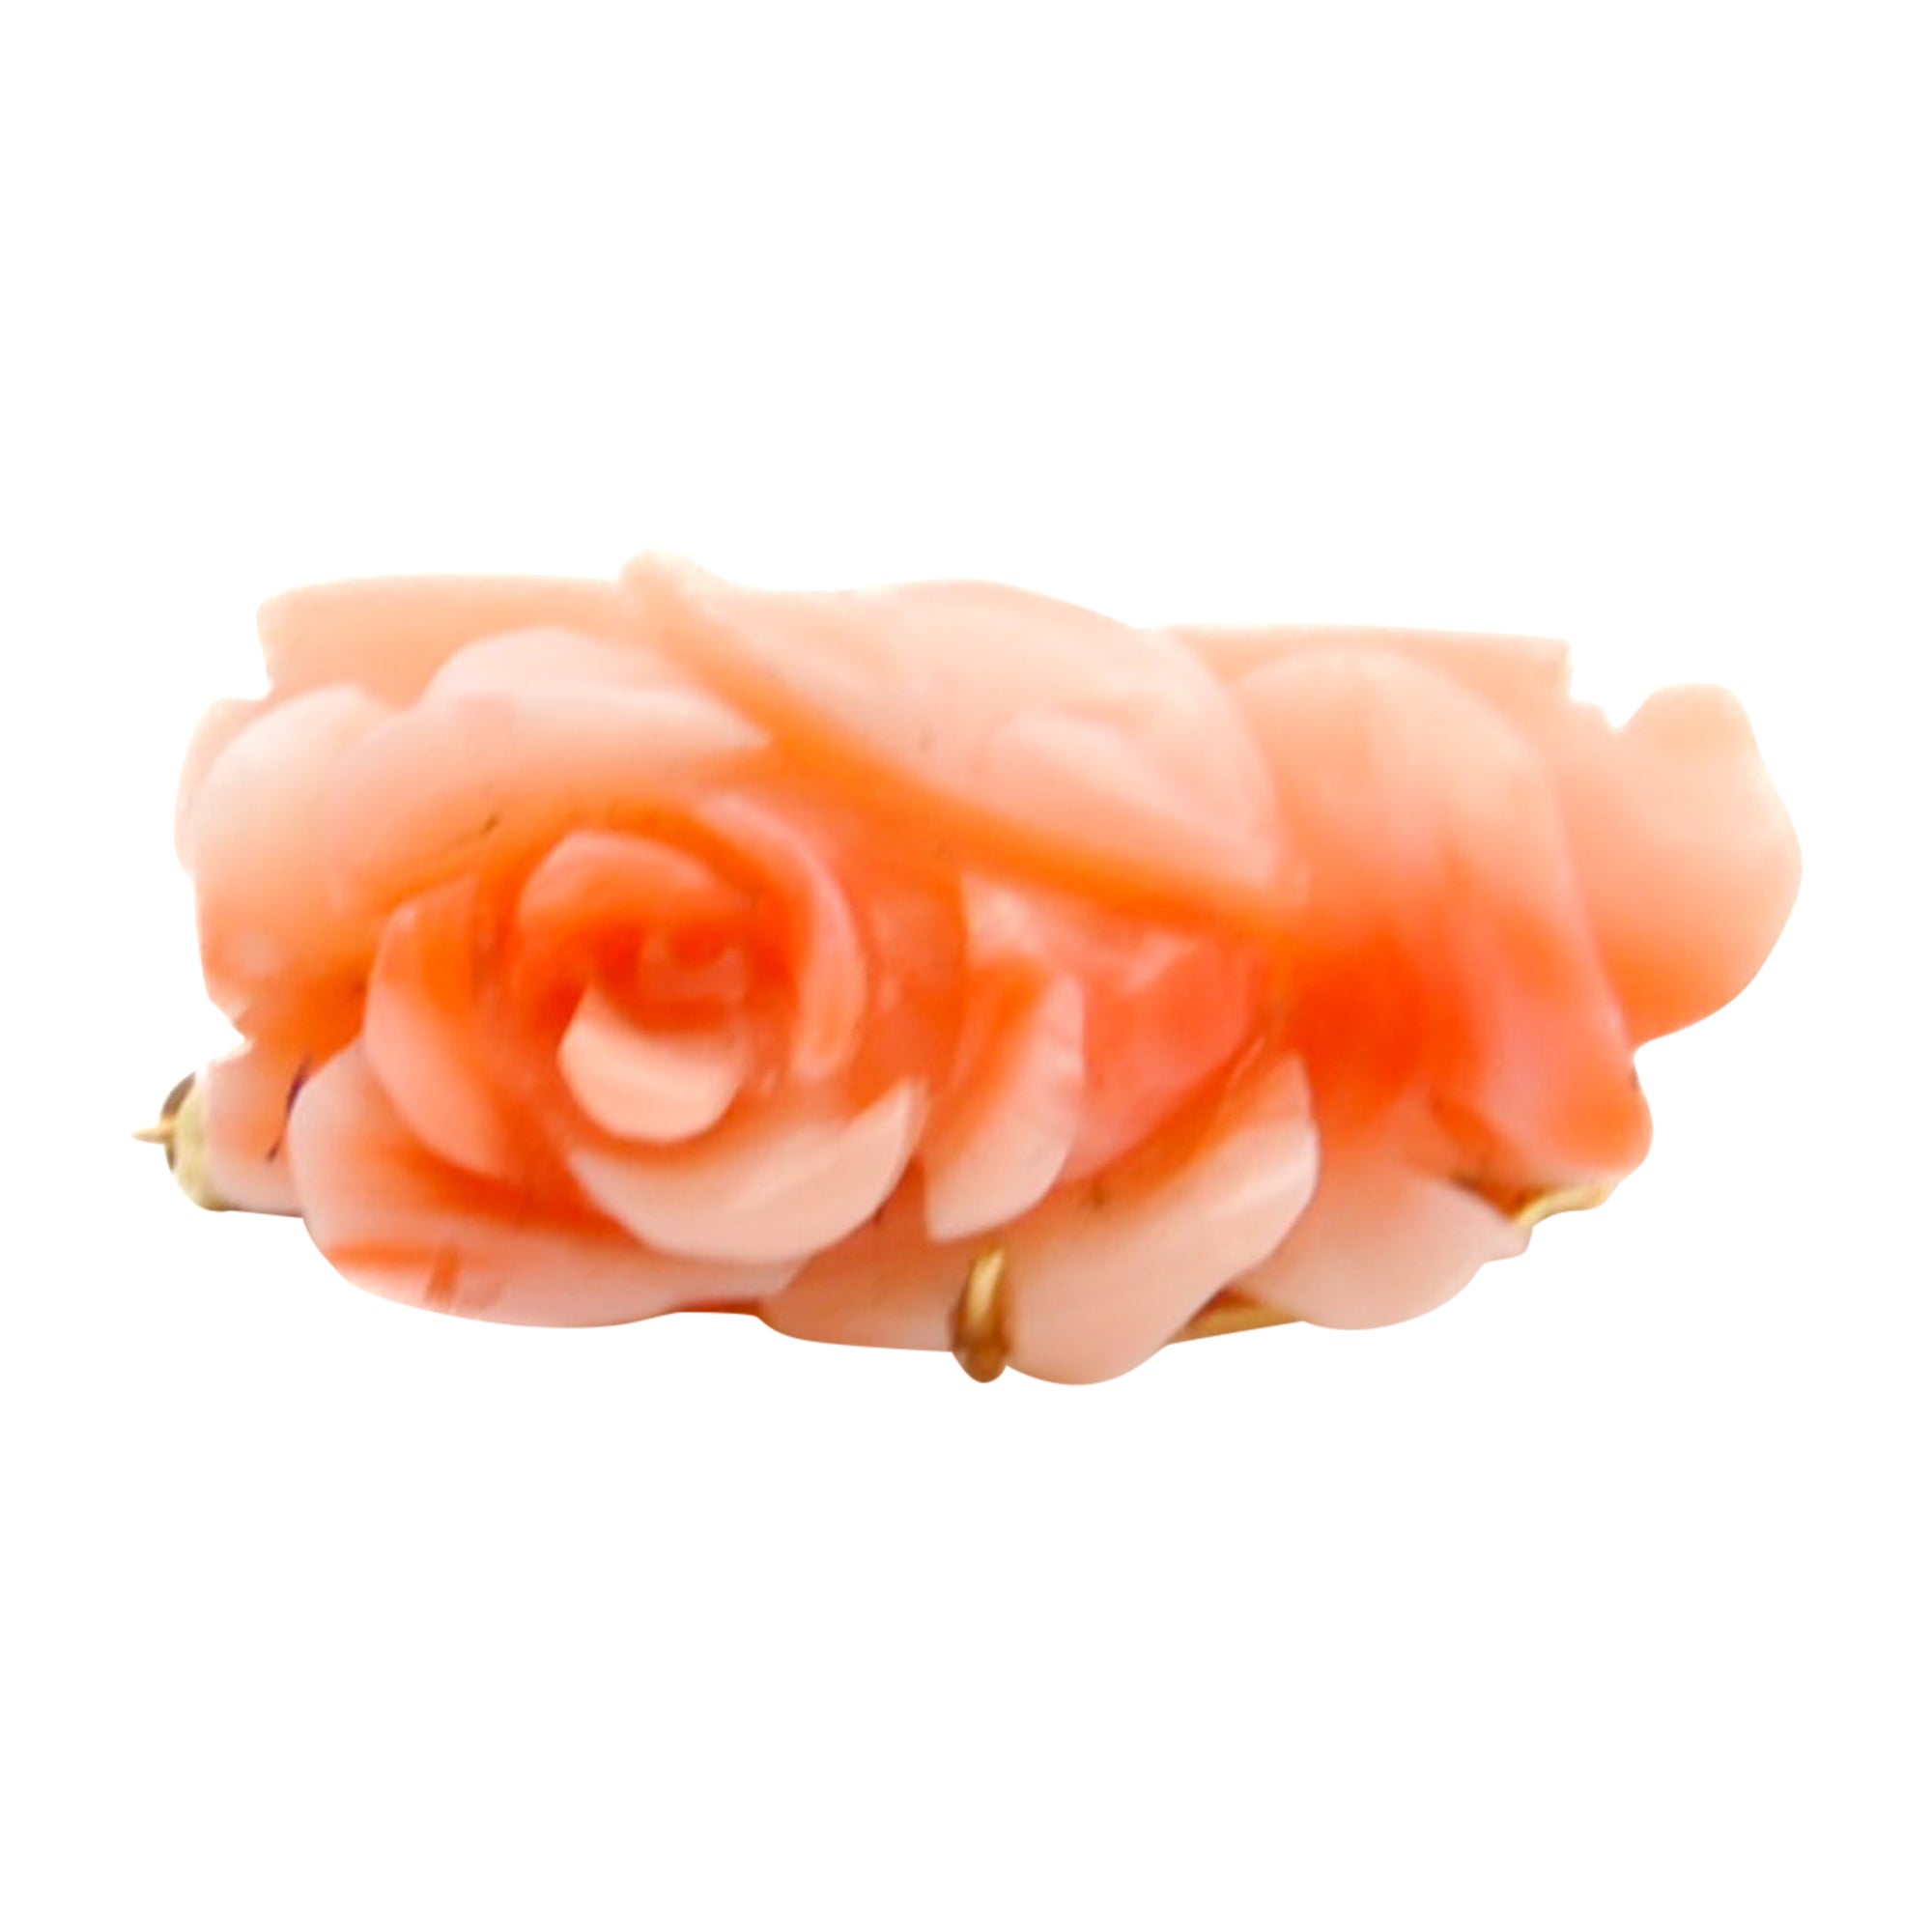 Goldbrosche mit rosa Koralle und Rosenblume geschnitzt